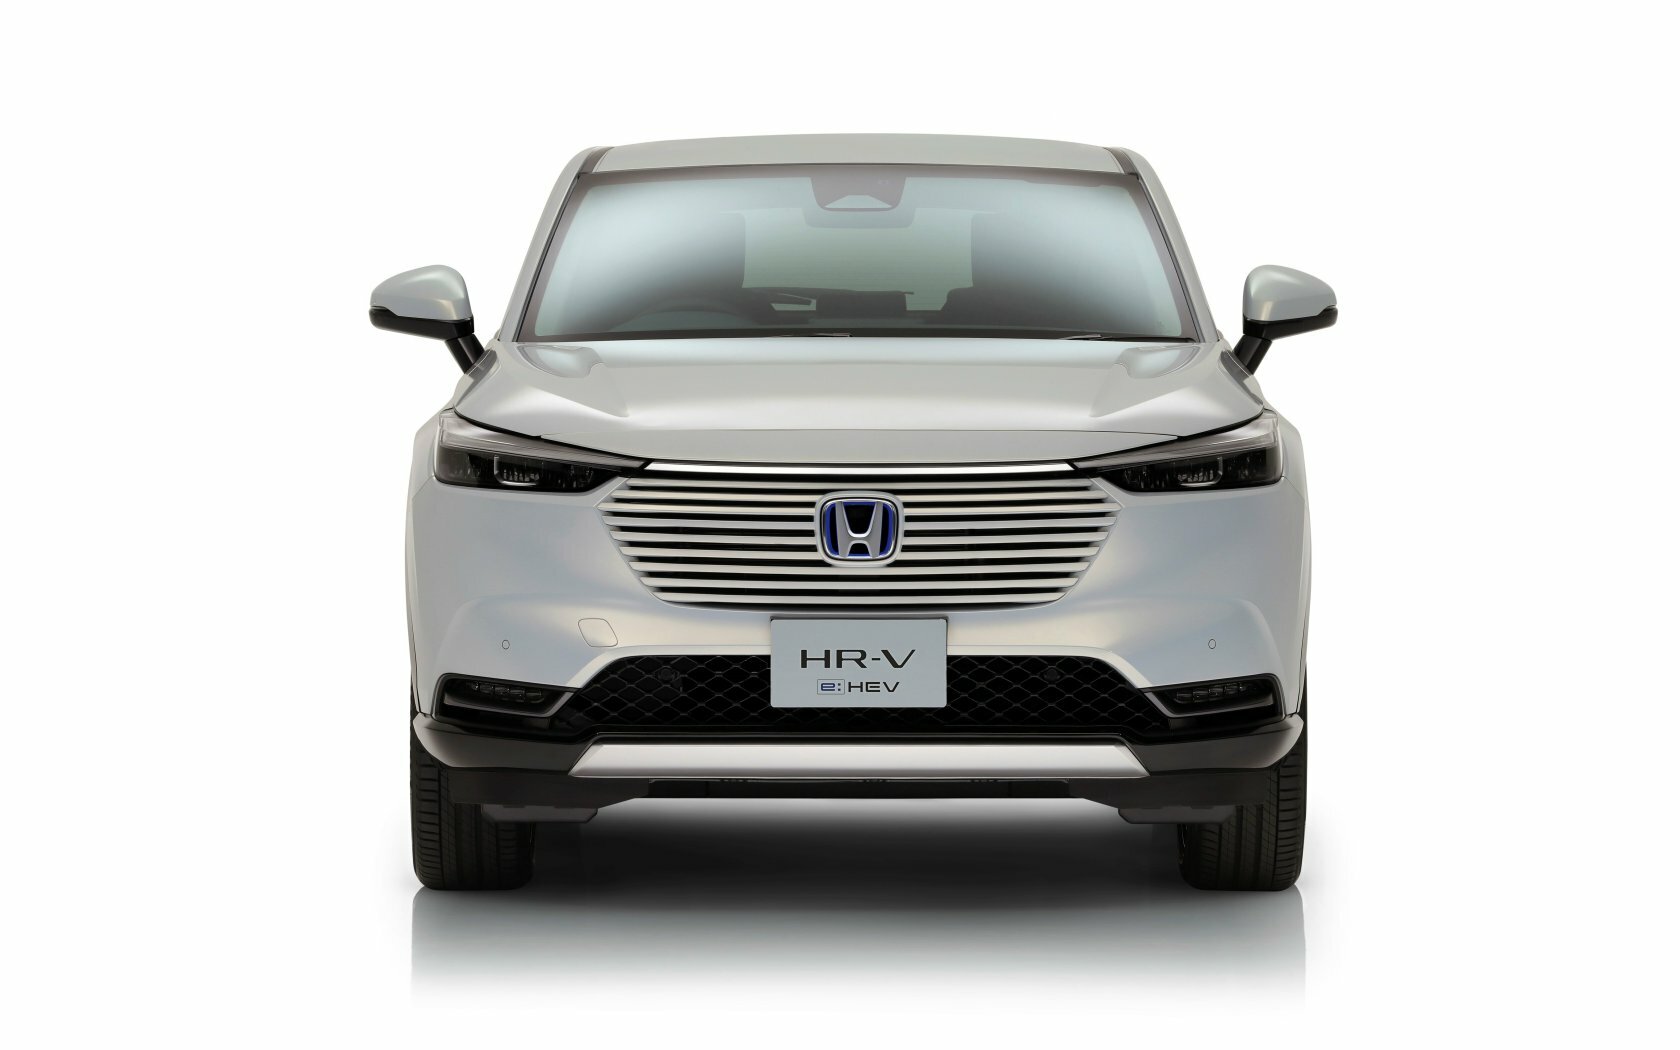 Honda ukázala nové HR-V, mřížka chladiče je bohatě chromovaná